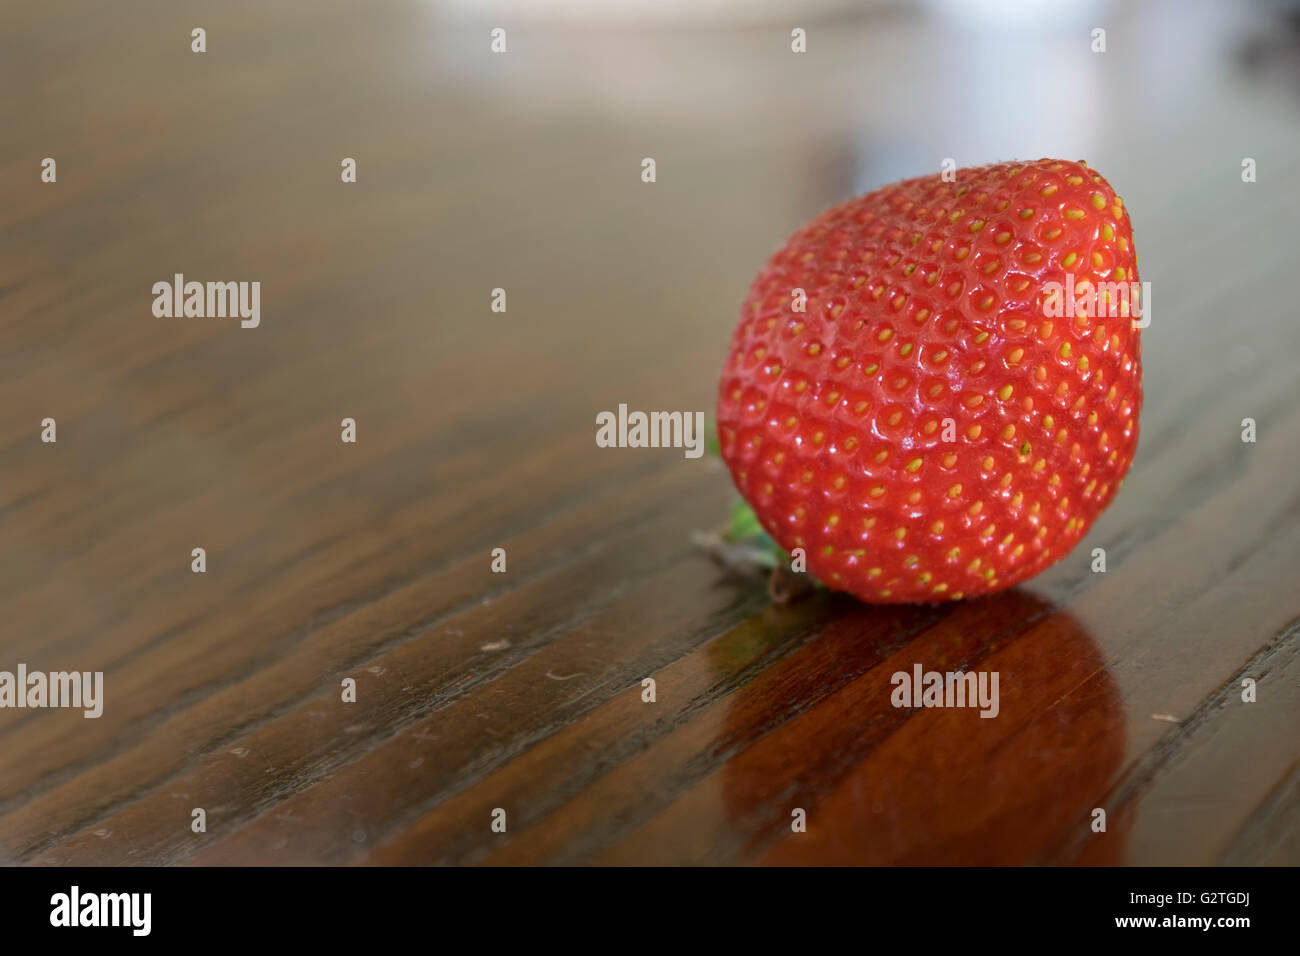 ripe strawberries Stock Photo